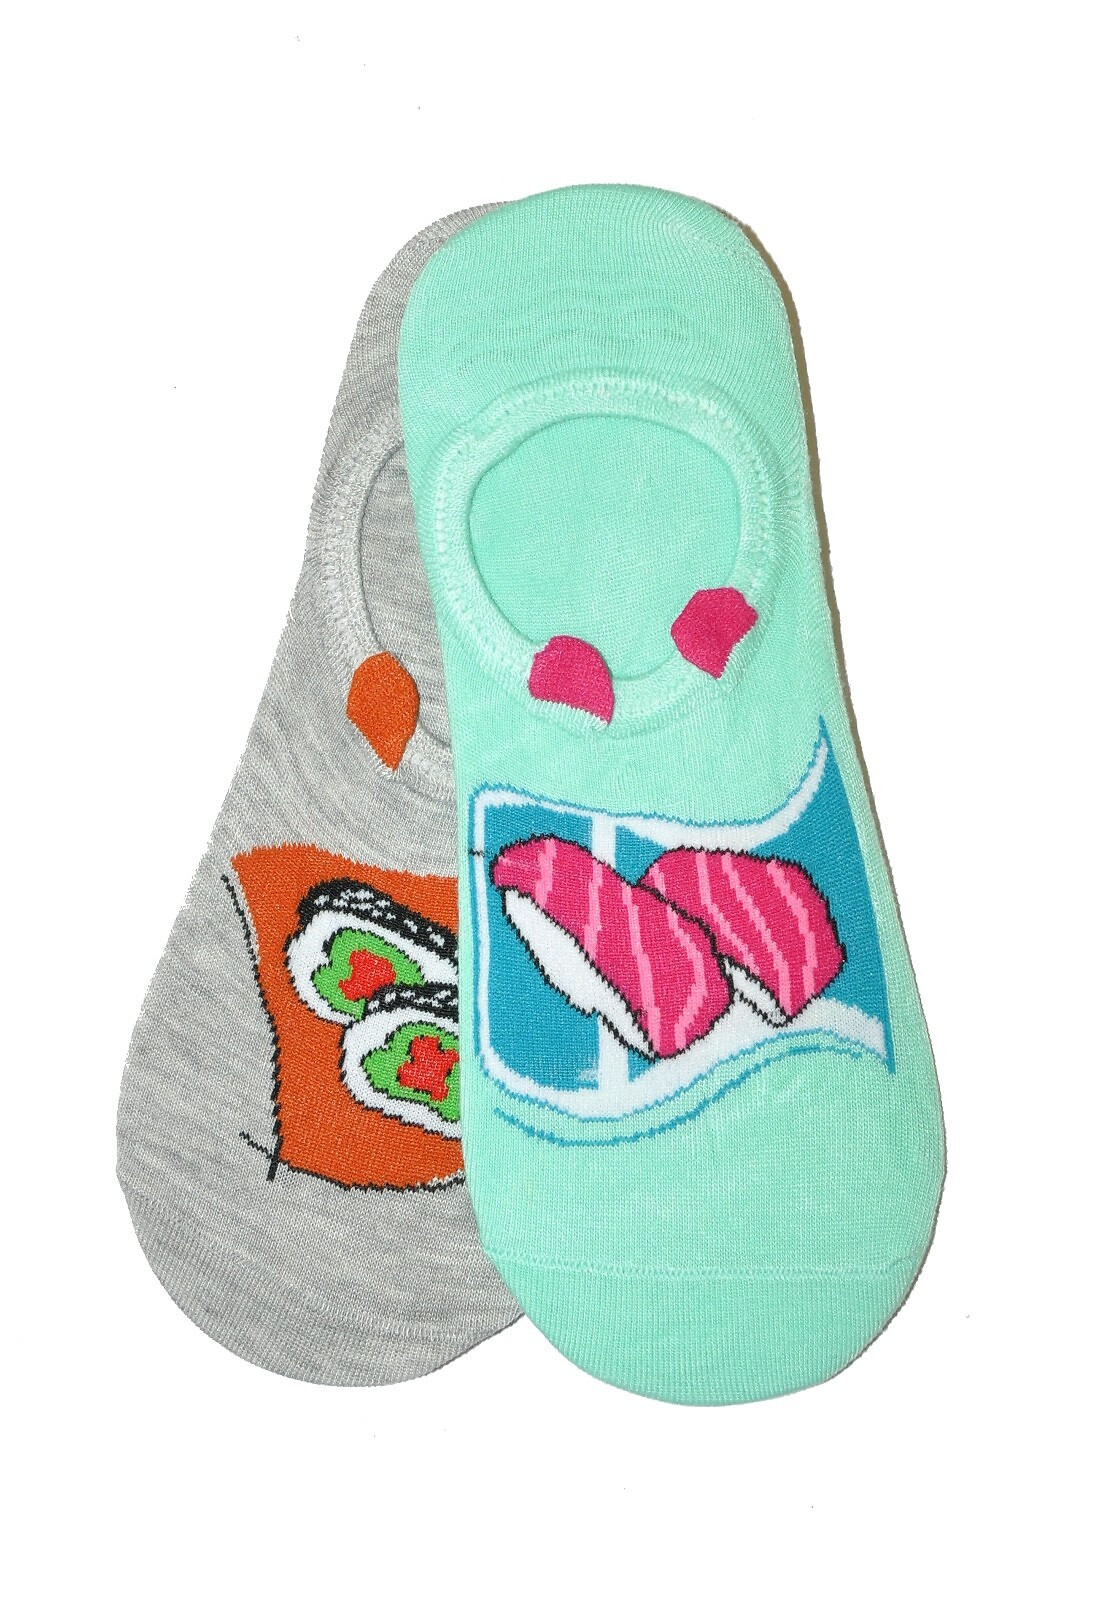 Dámské ponožky baleríny WiK 0144 Midini Sushi A'2 36-41 směs barev 39-41